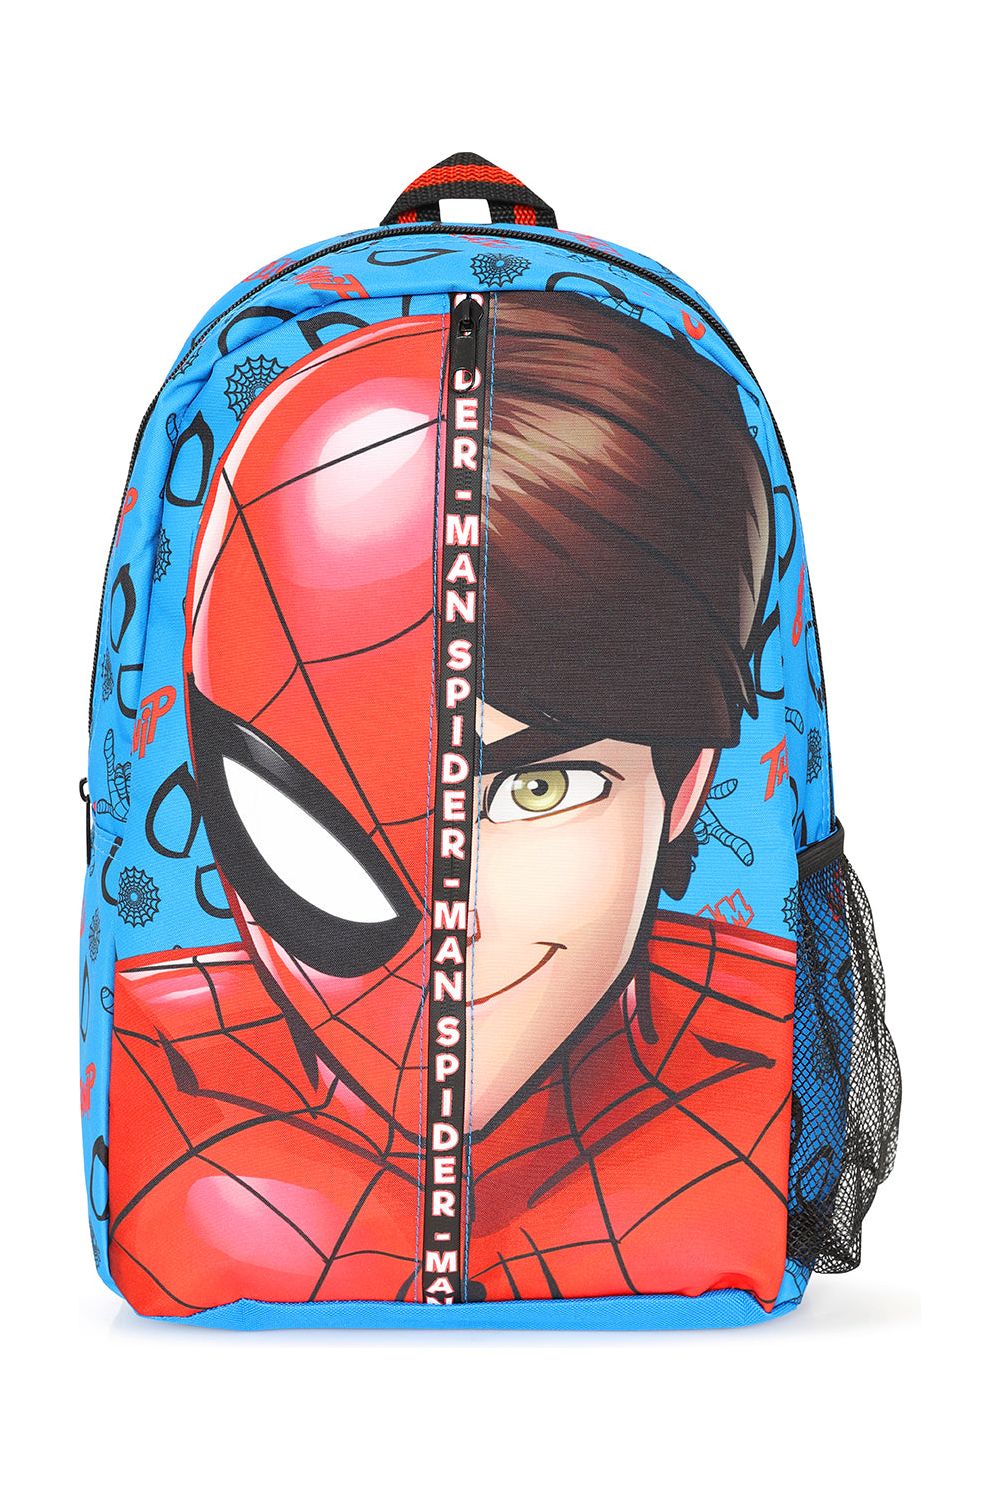 Official Spiderman Backpack Peter Parker Design School Bag Boys Girls